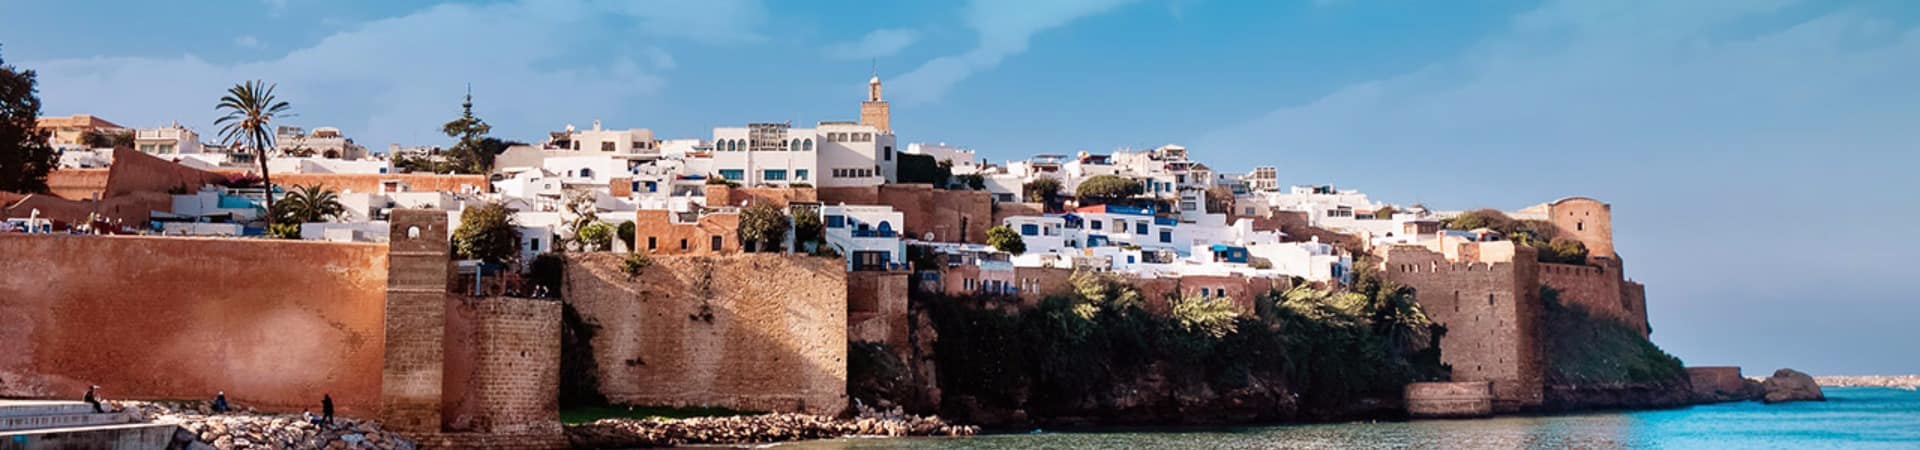 Vista da cidade de Rabat